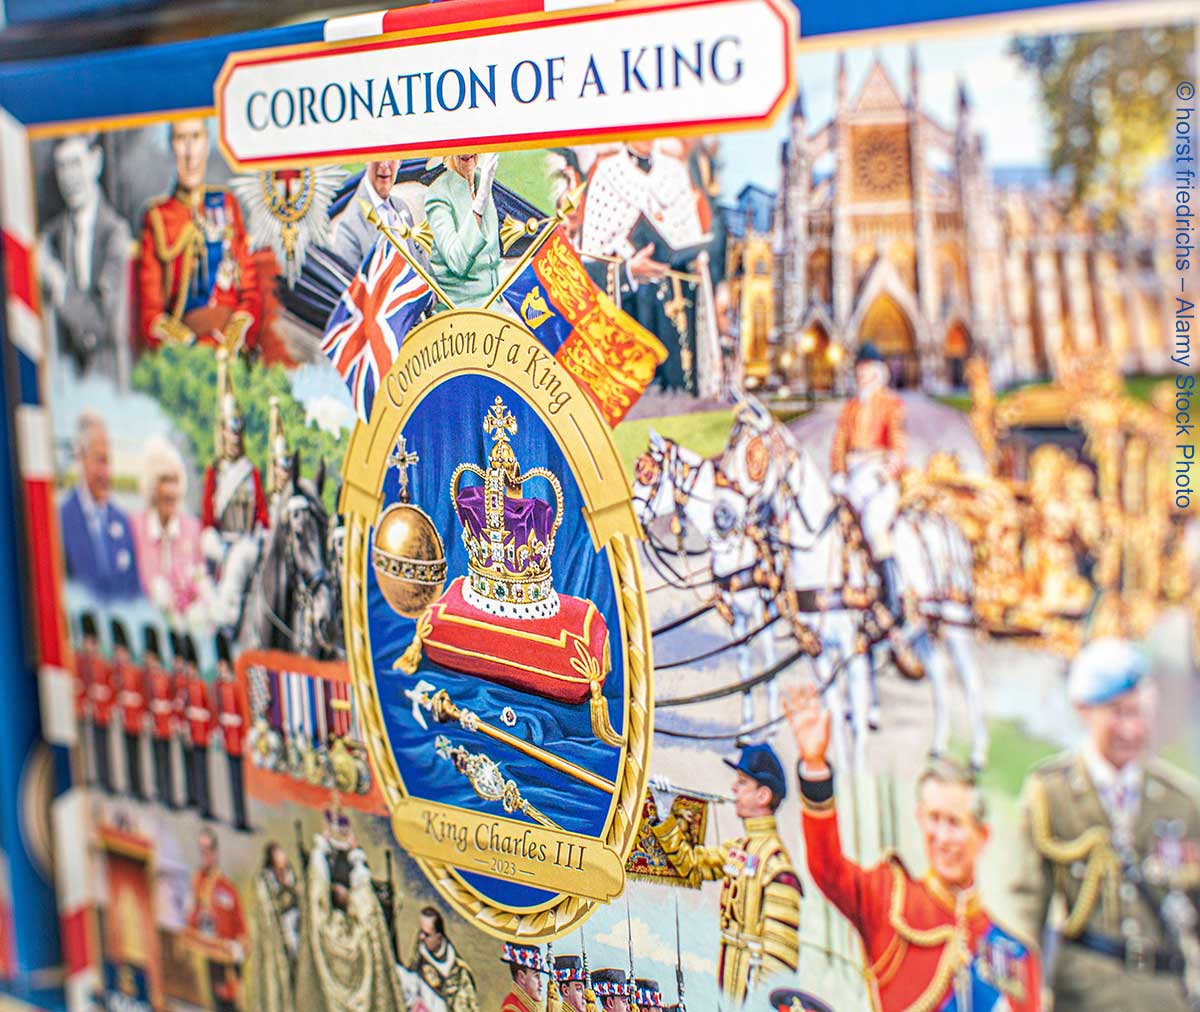 Karton eines Puzzles, dass anlässlich der Krönung von König Charles III. angeboten wurde